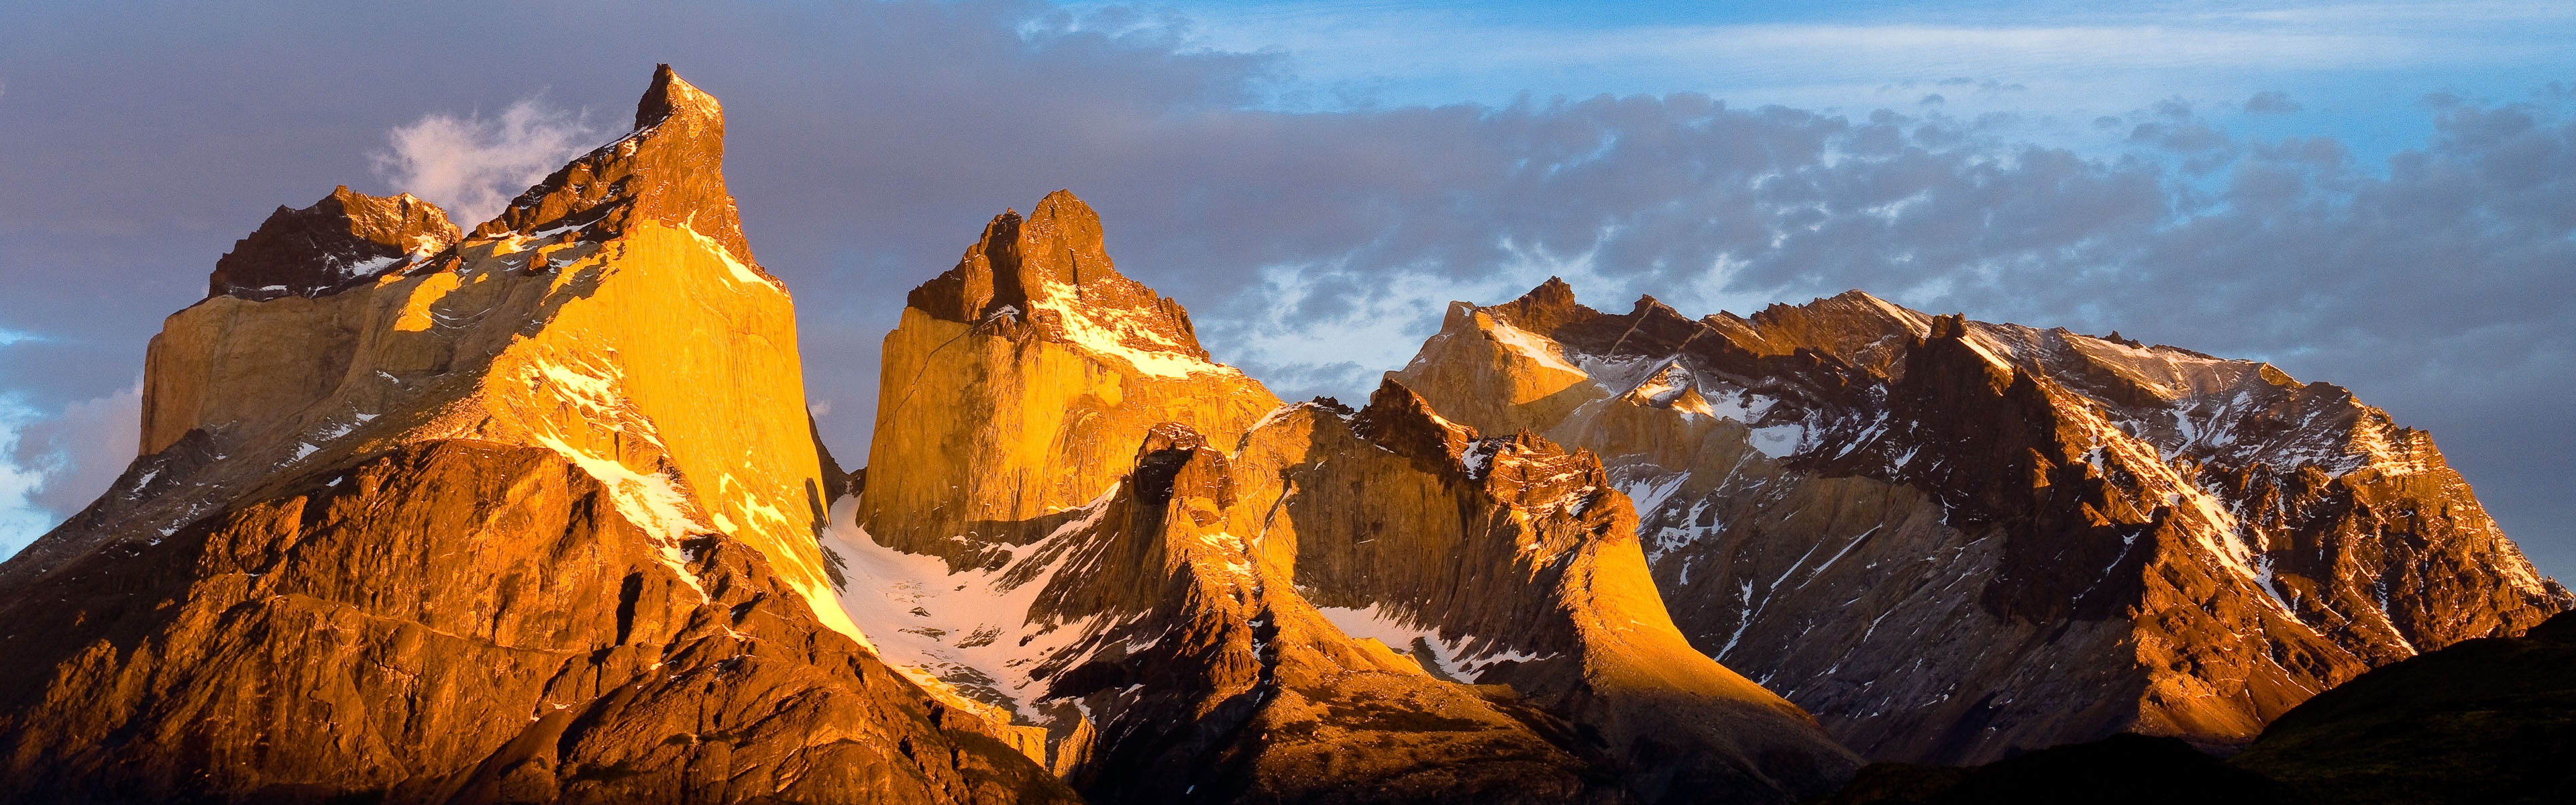 Windows 8 oficiální panoramatické tapety, vlny, lesy, majestátní hory #15 - 3840x1200